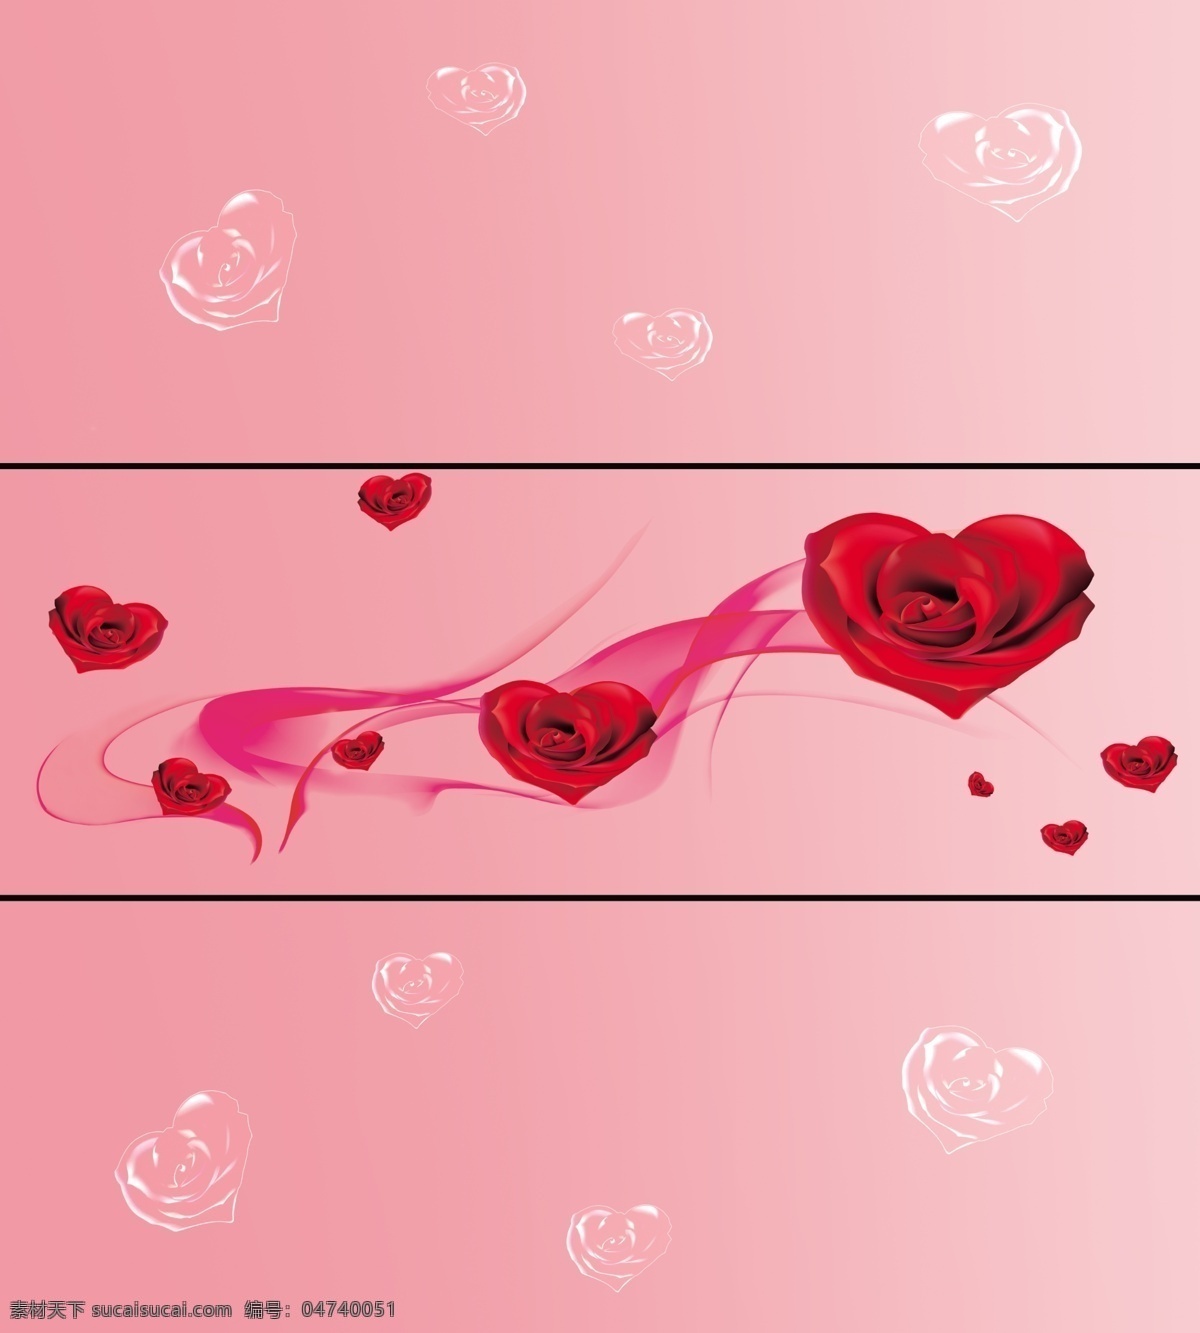 粉色 广告设计模板 红玫瑰 梦幻 心心相印 心型玫瑰 移门 移门图案 模板下载 透明玫瑰 源文件 psd源文件